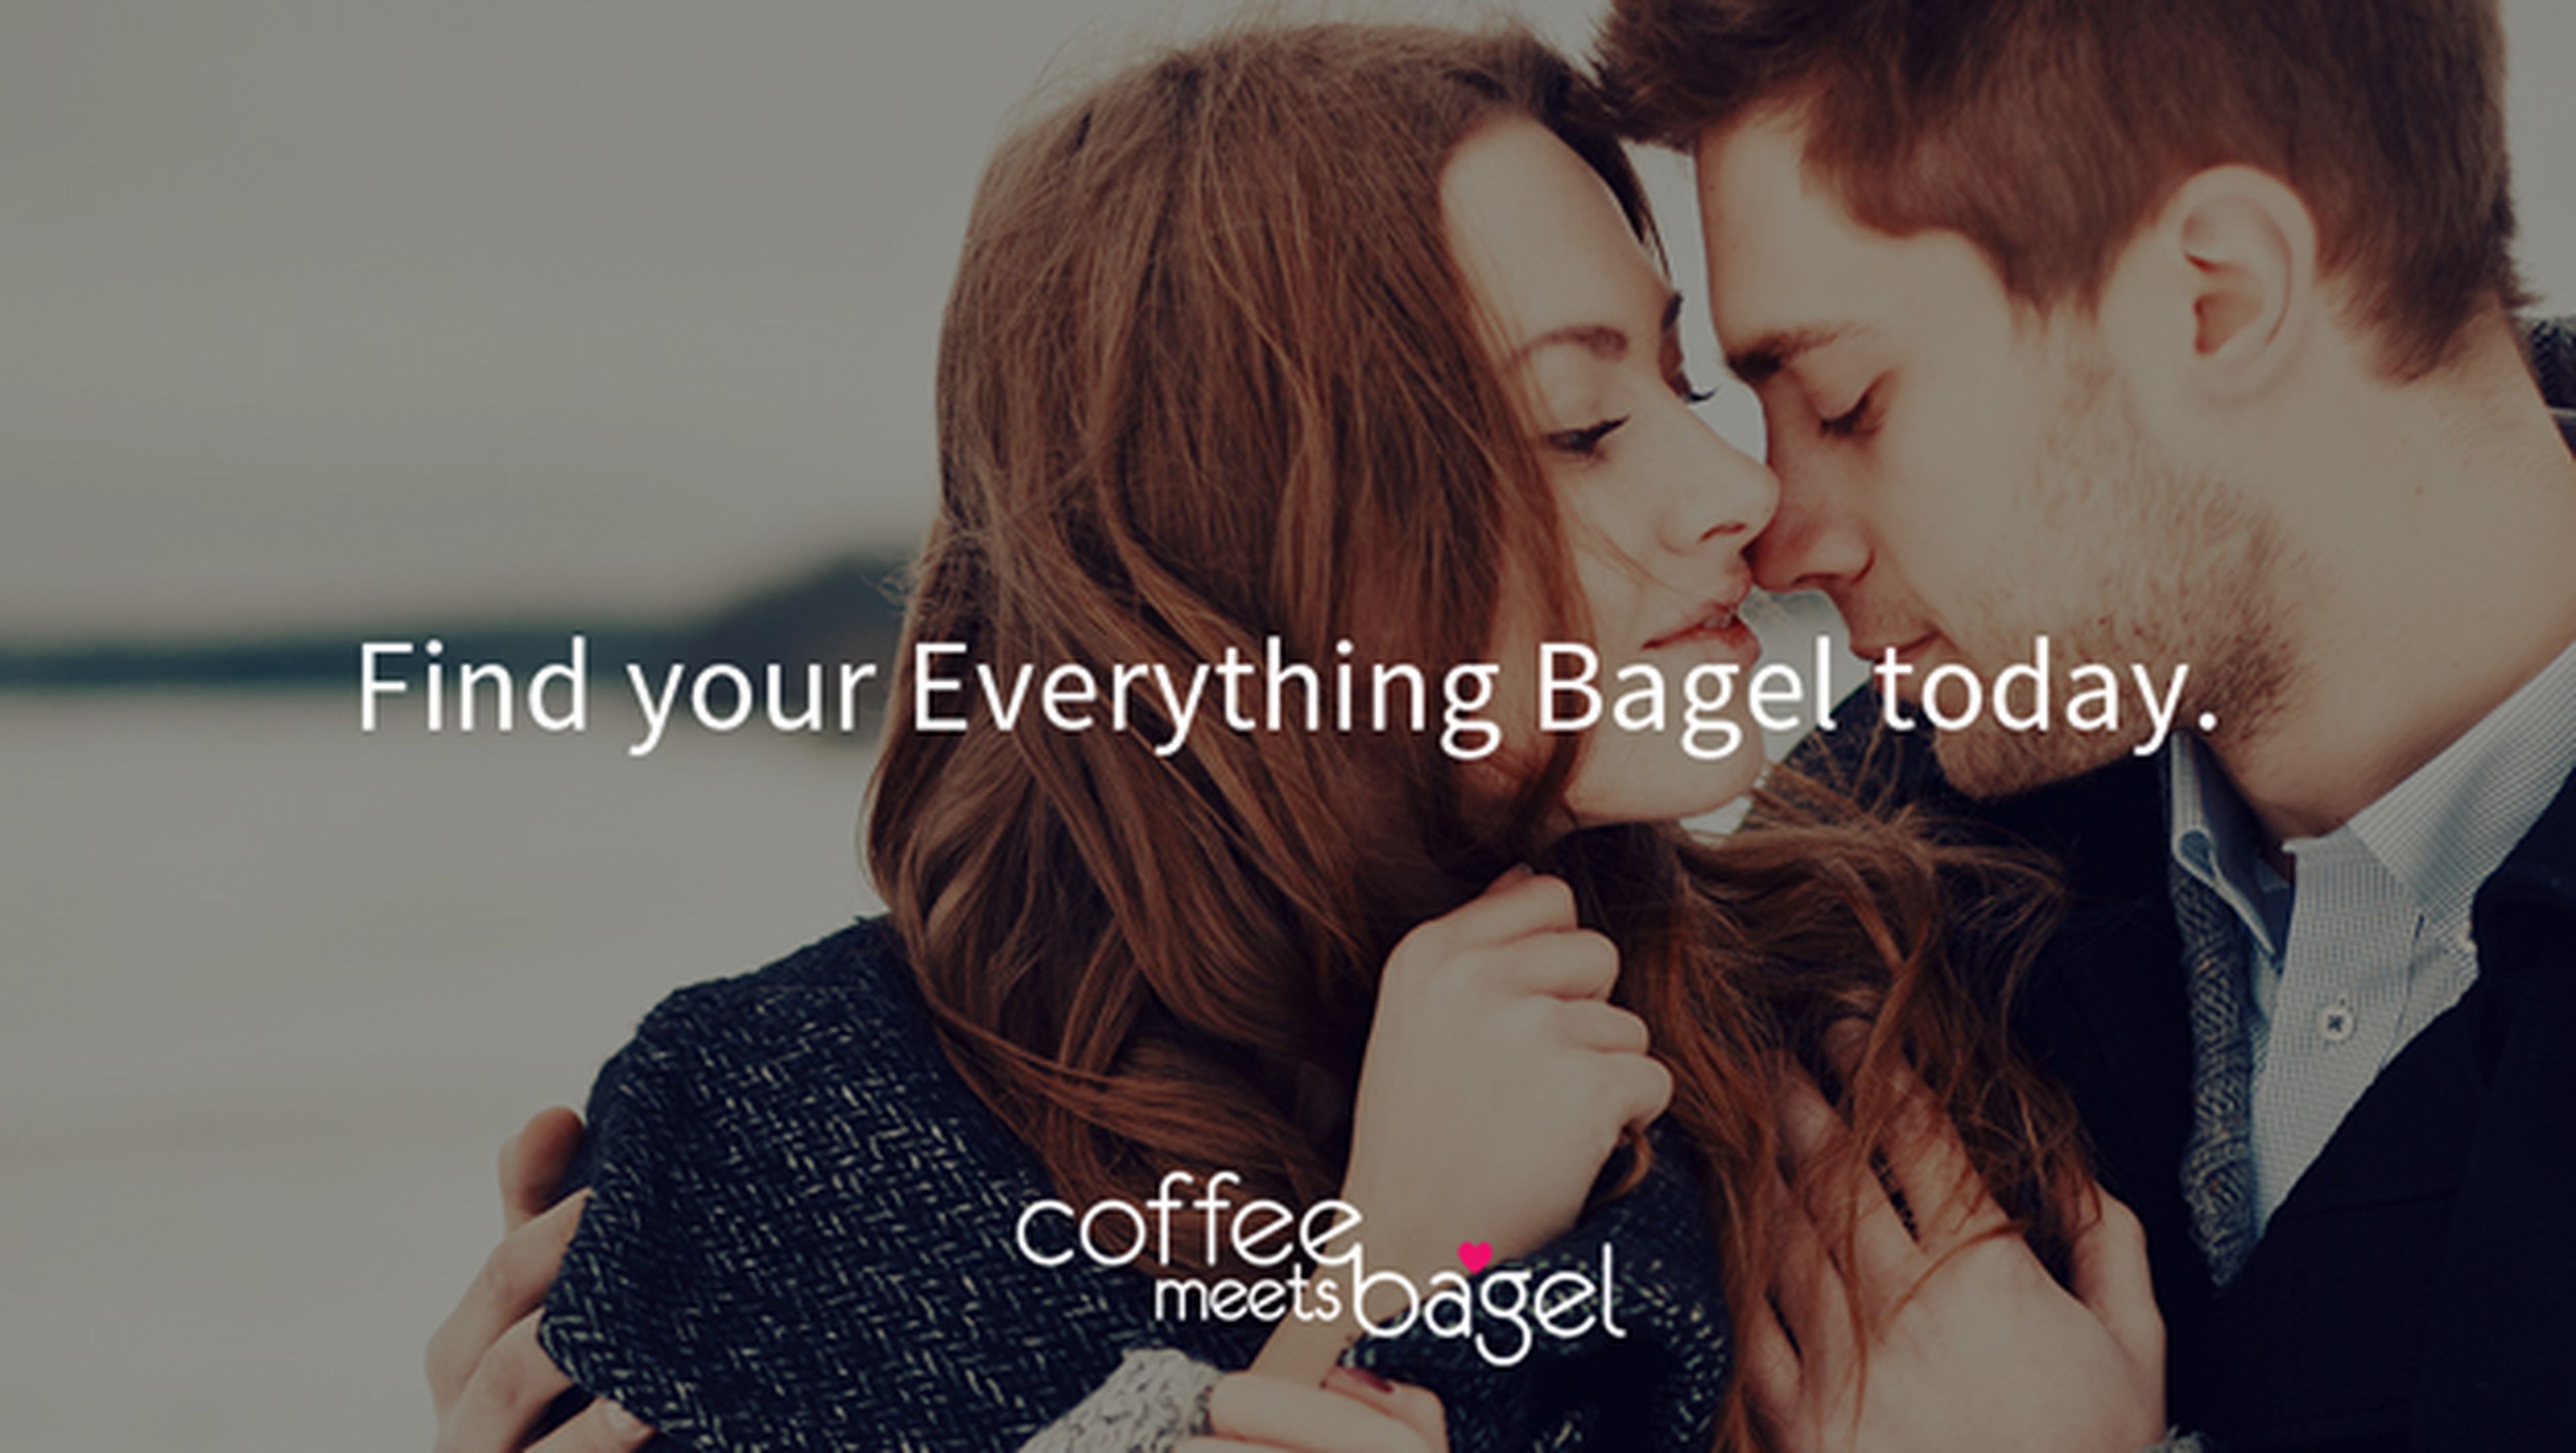 Coffe Meets Bagel